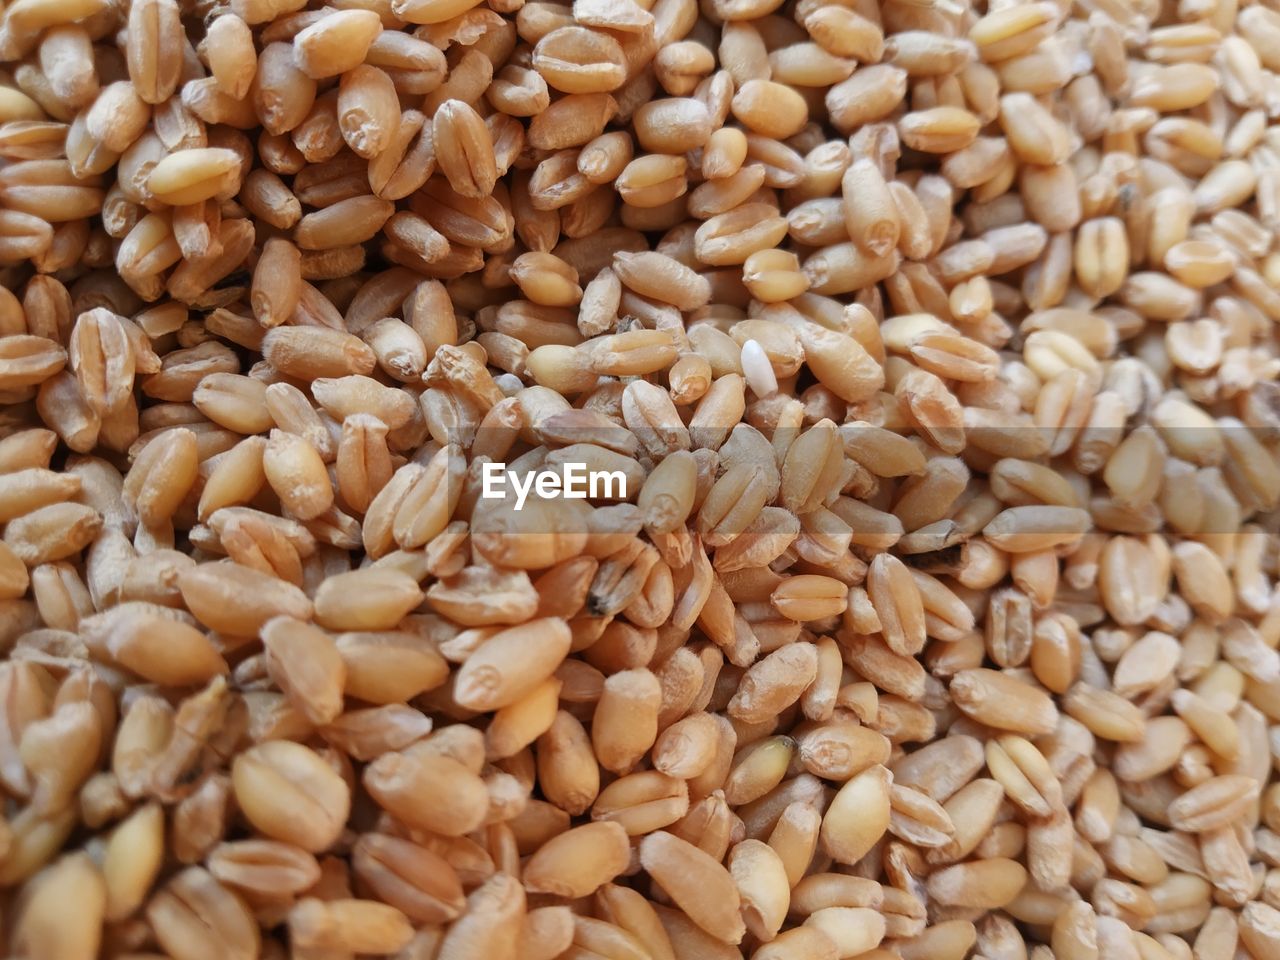 Wheat germ